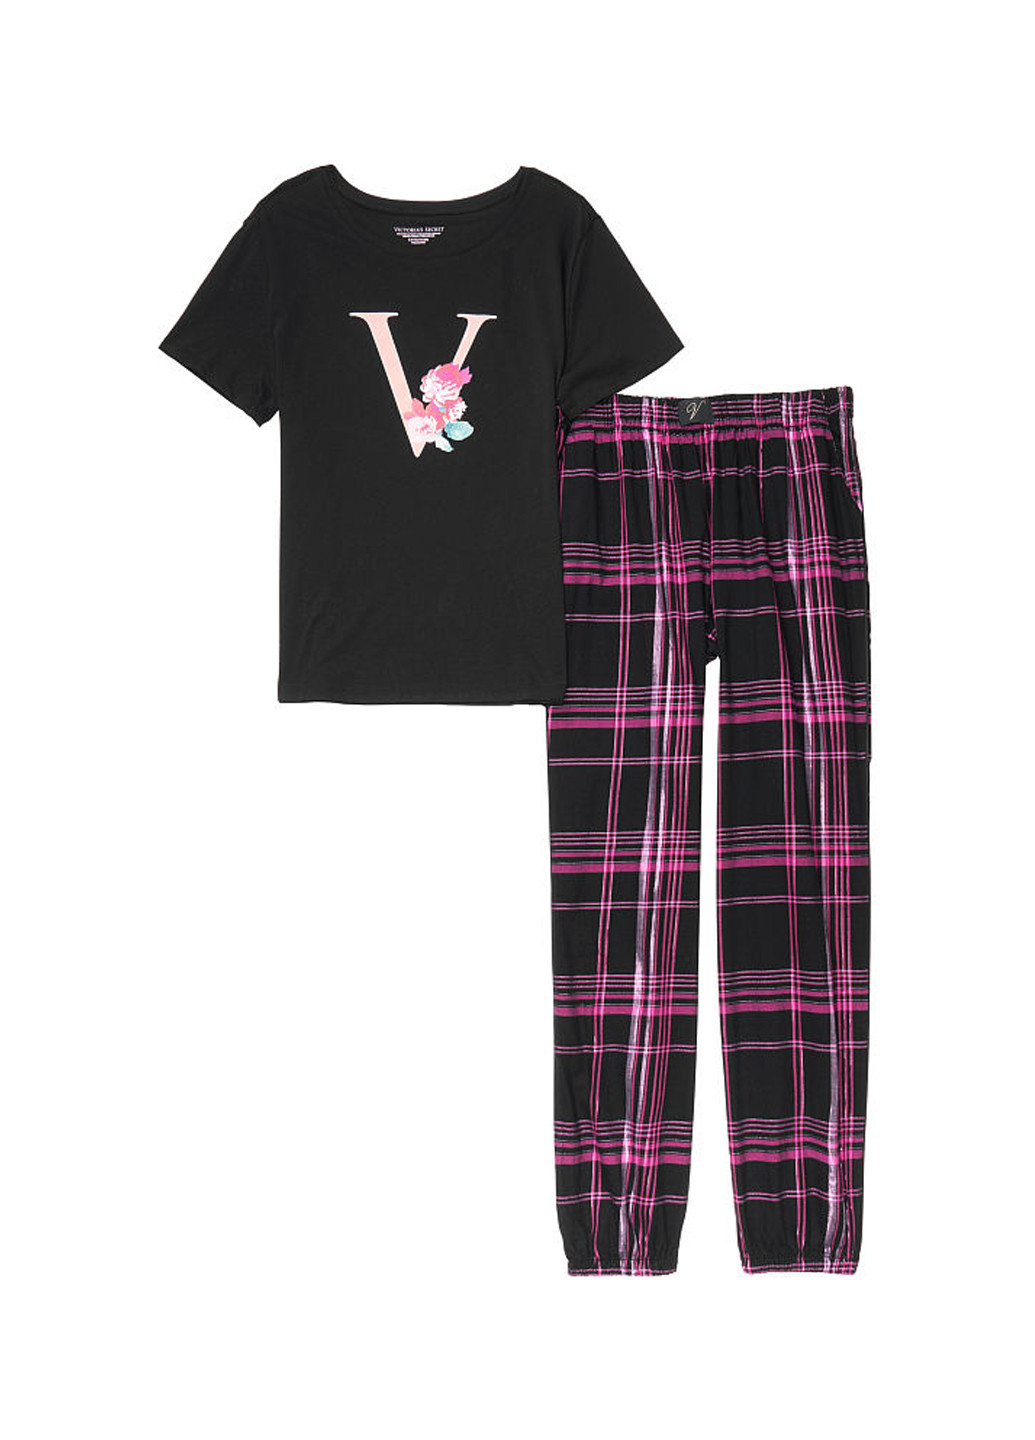 Черная всесезон пижама (футболка, брюки) футболка + брюки Victoria's Secret